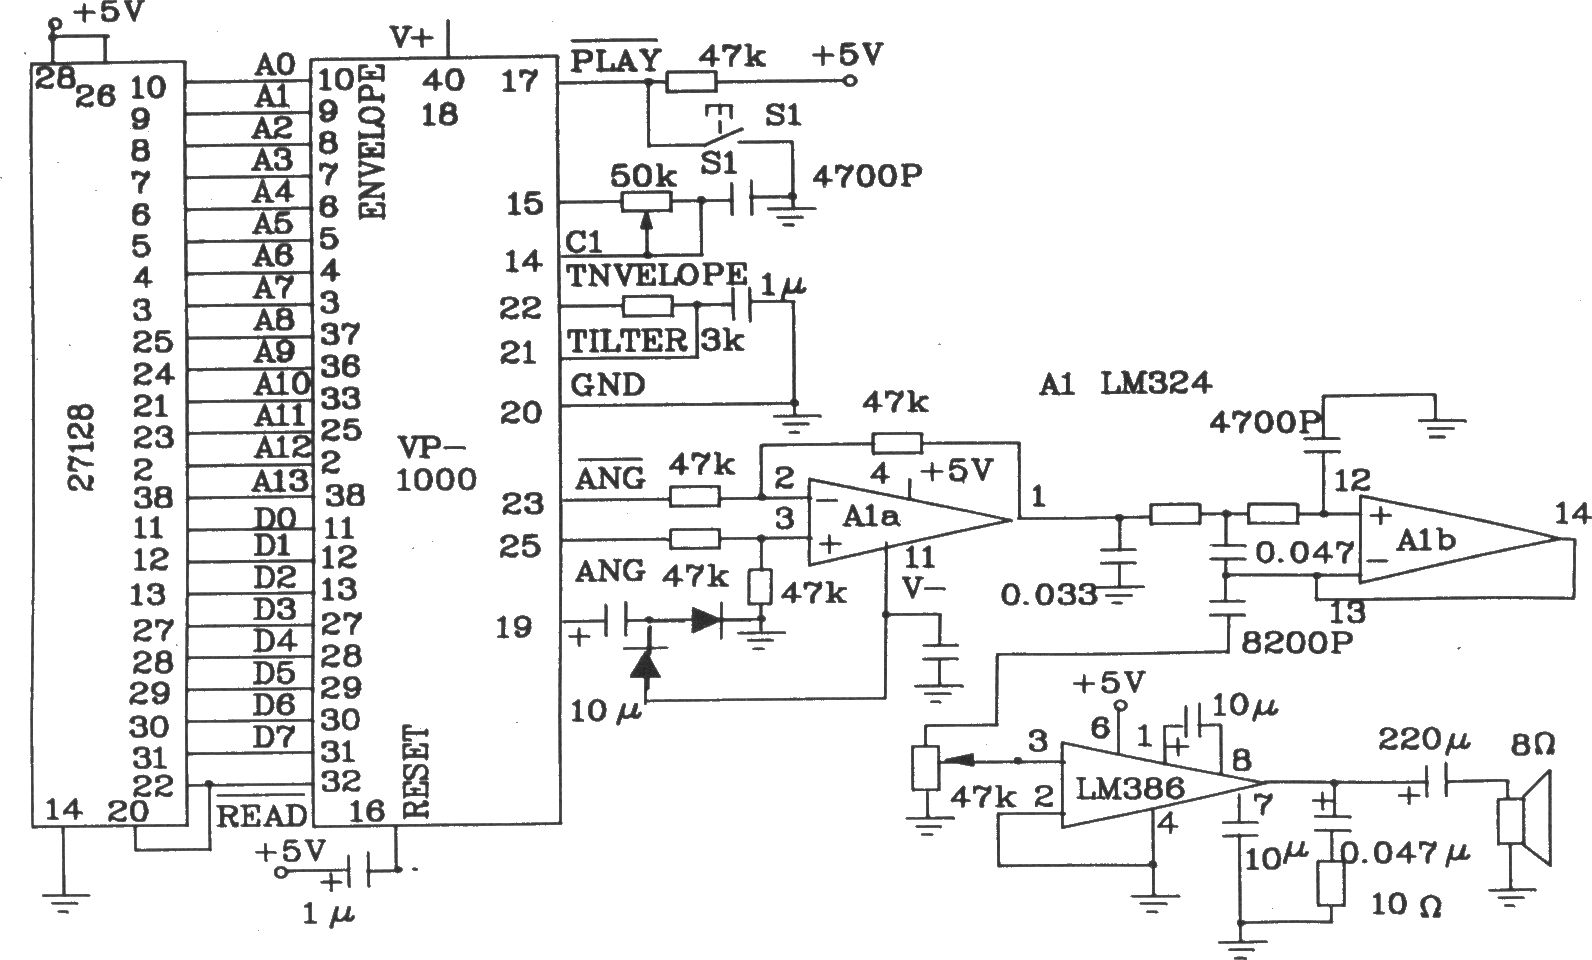 語音合成芯片VP-1000和EEPROM組成的放音電路圖